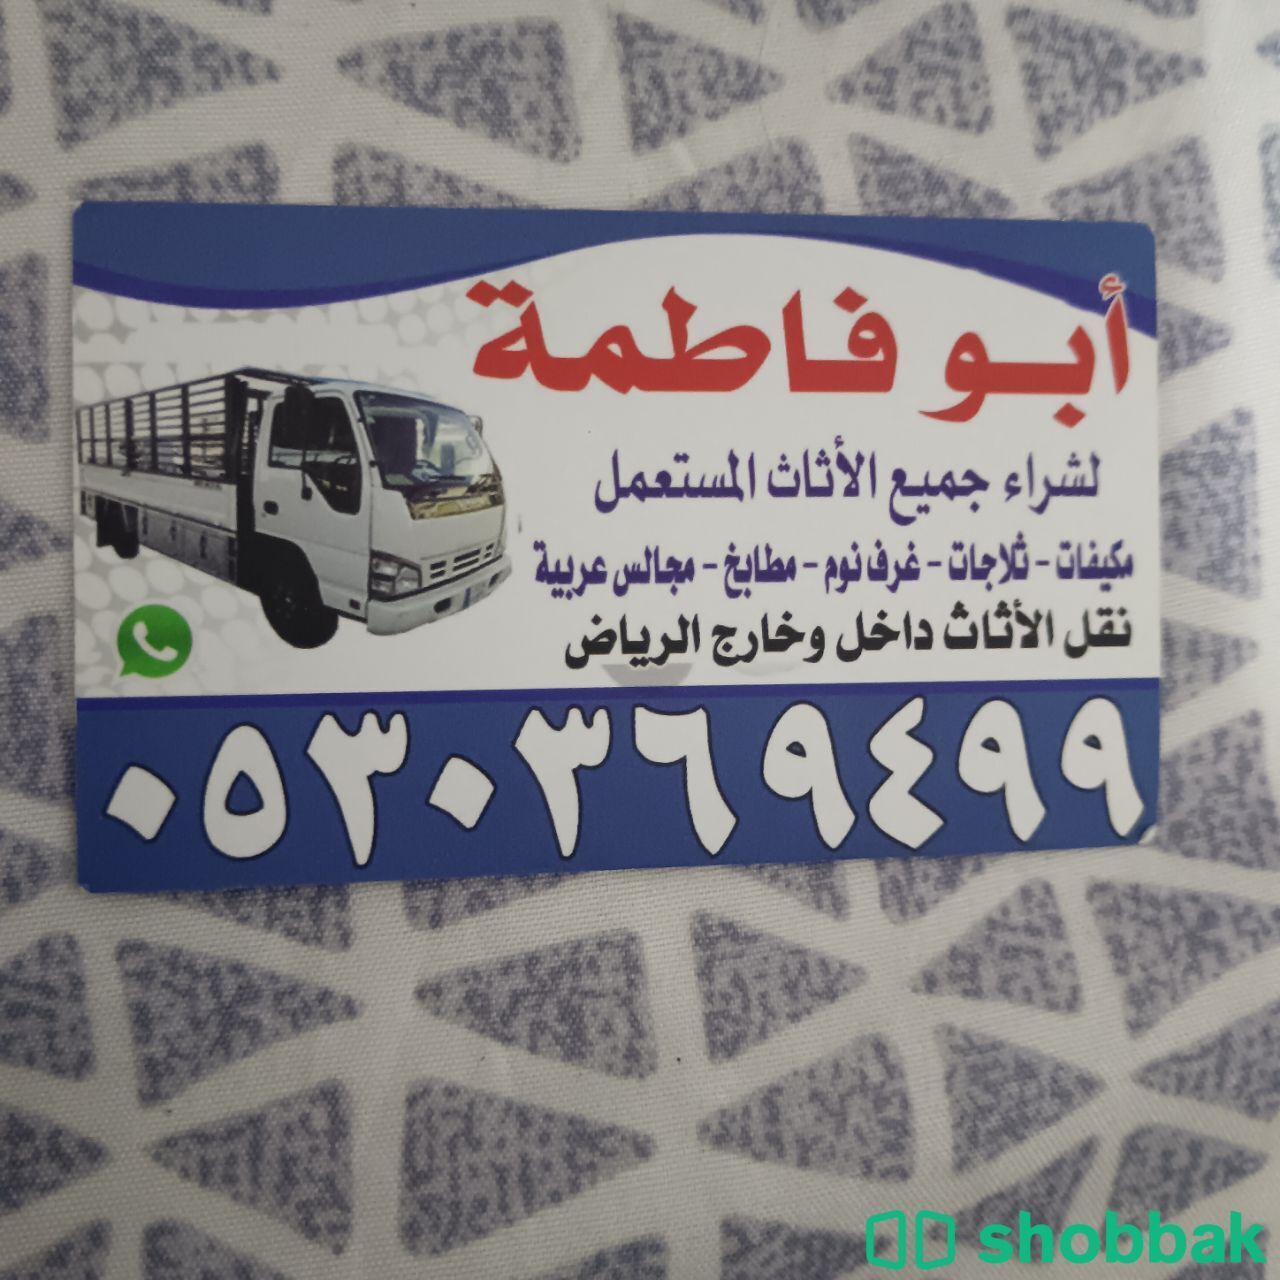 شراء أثاث مستعمل حي الدار البيضاء 0530369499  Shobbak Saudi Arabia